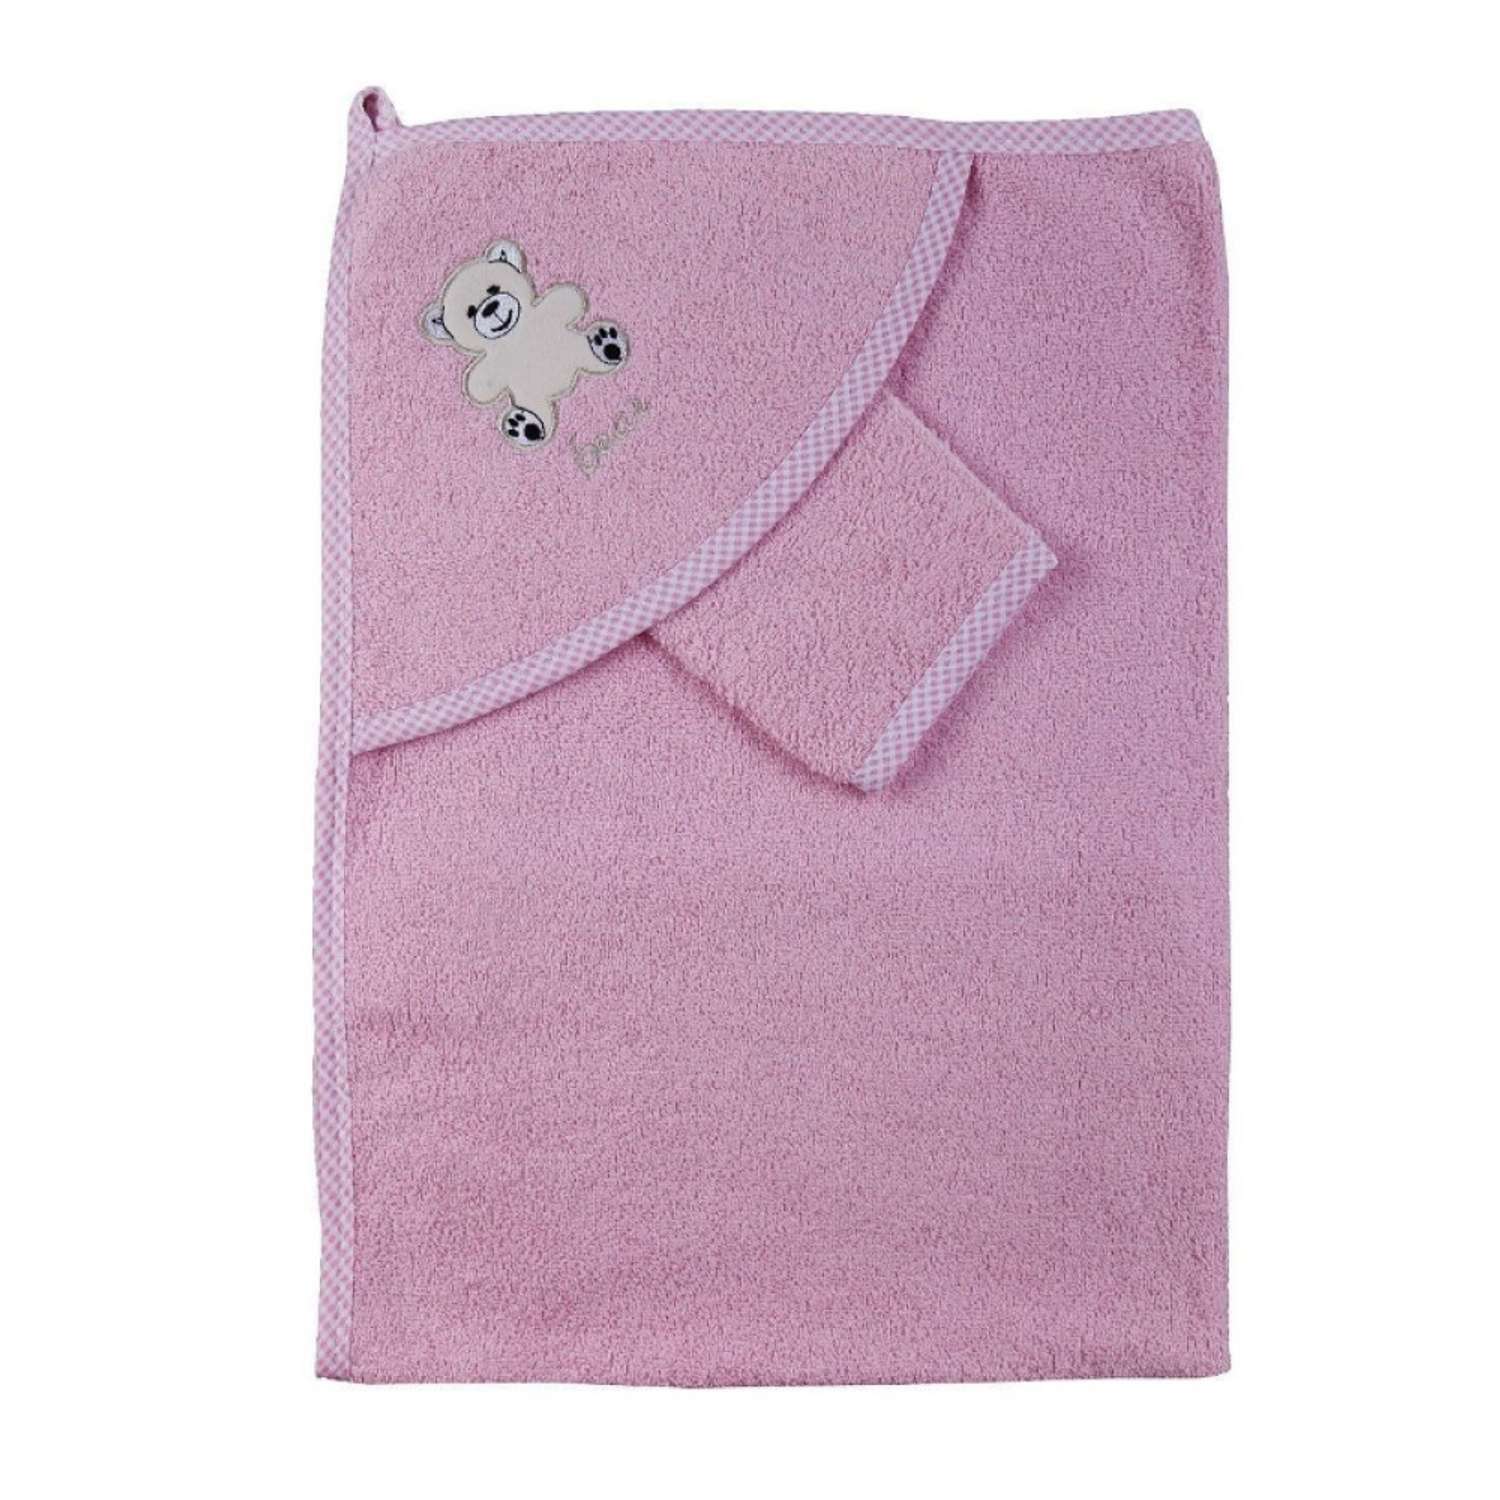 Набор для купания малыша M-BABY махровое полотенце с уголком и рукавичка 100% хлопок аист/розовый - фото 1